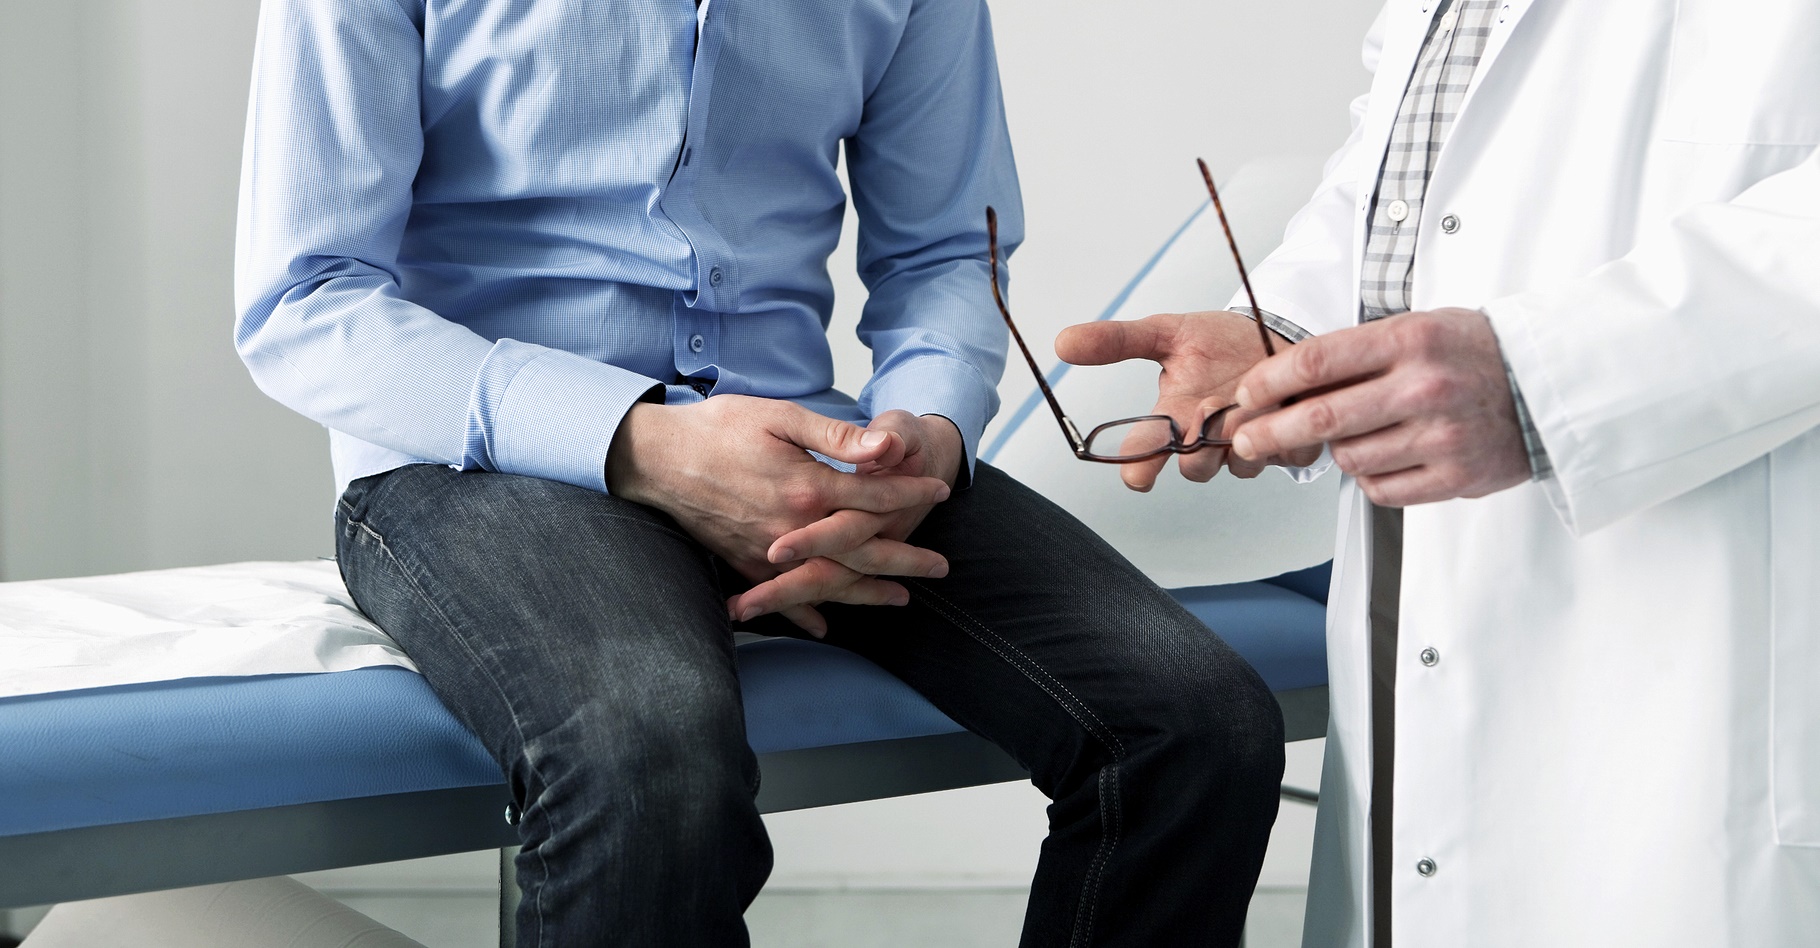 Effets secondaires, conséquences à court et à long terme : les patients sont invités à discuter avec leur médecin du rapport bénéfices/risques des traitements du cancer de la prostate. © Image Point Fr, Shutterstock